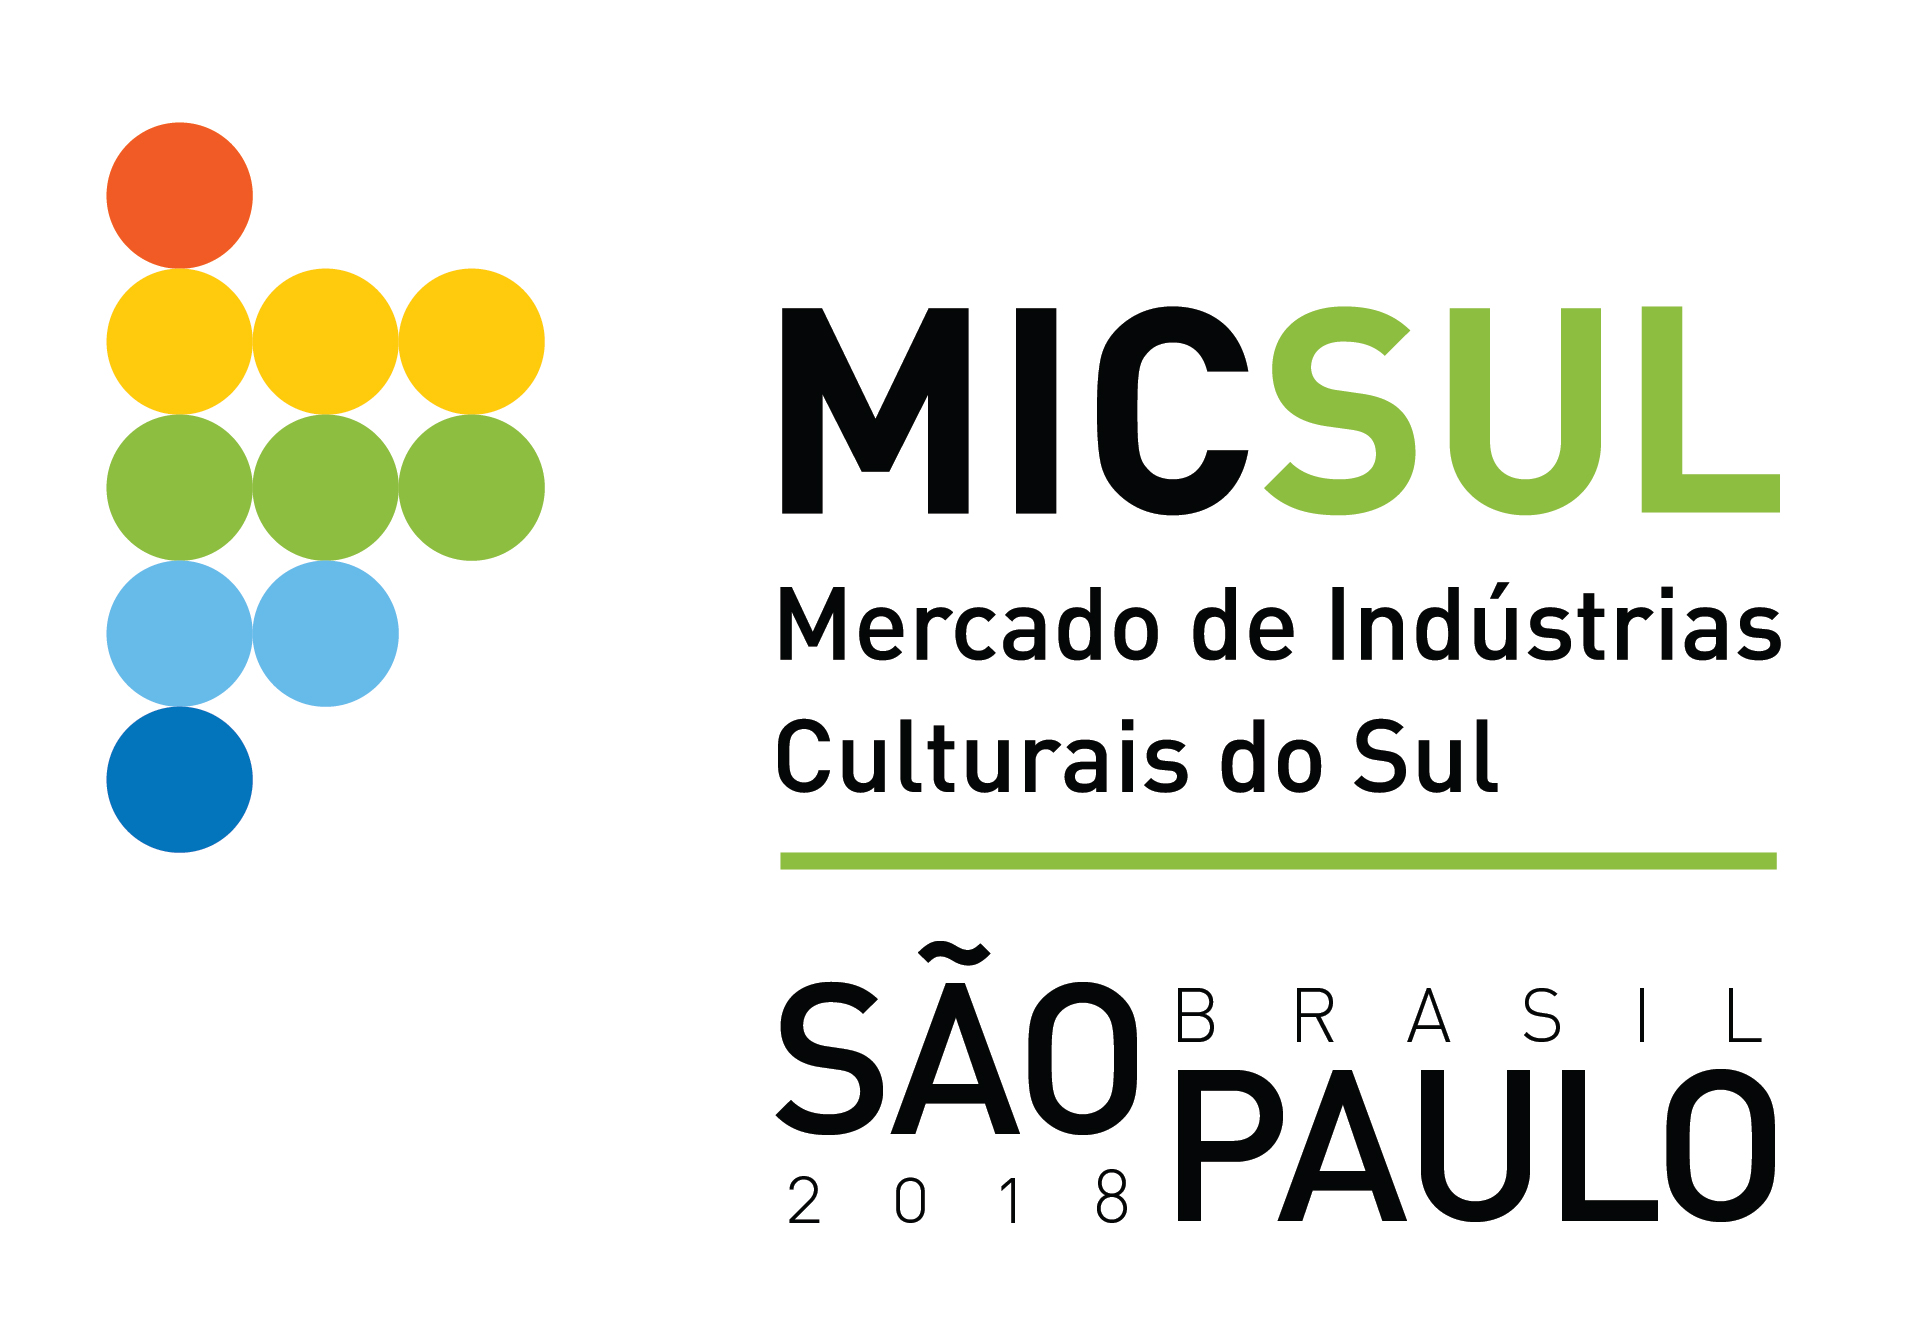 San Pablo será sede del MICSUR 2018 imagen